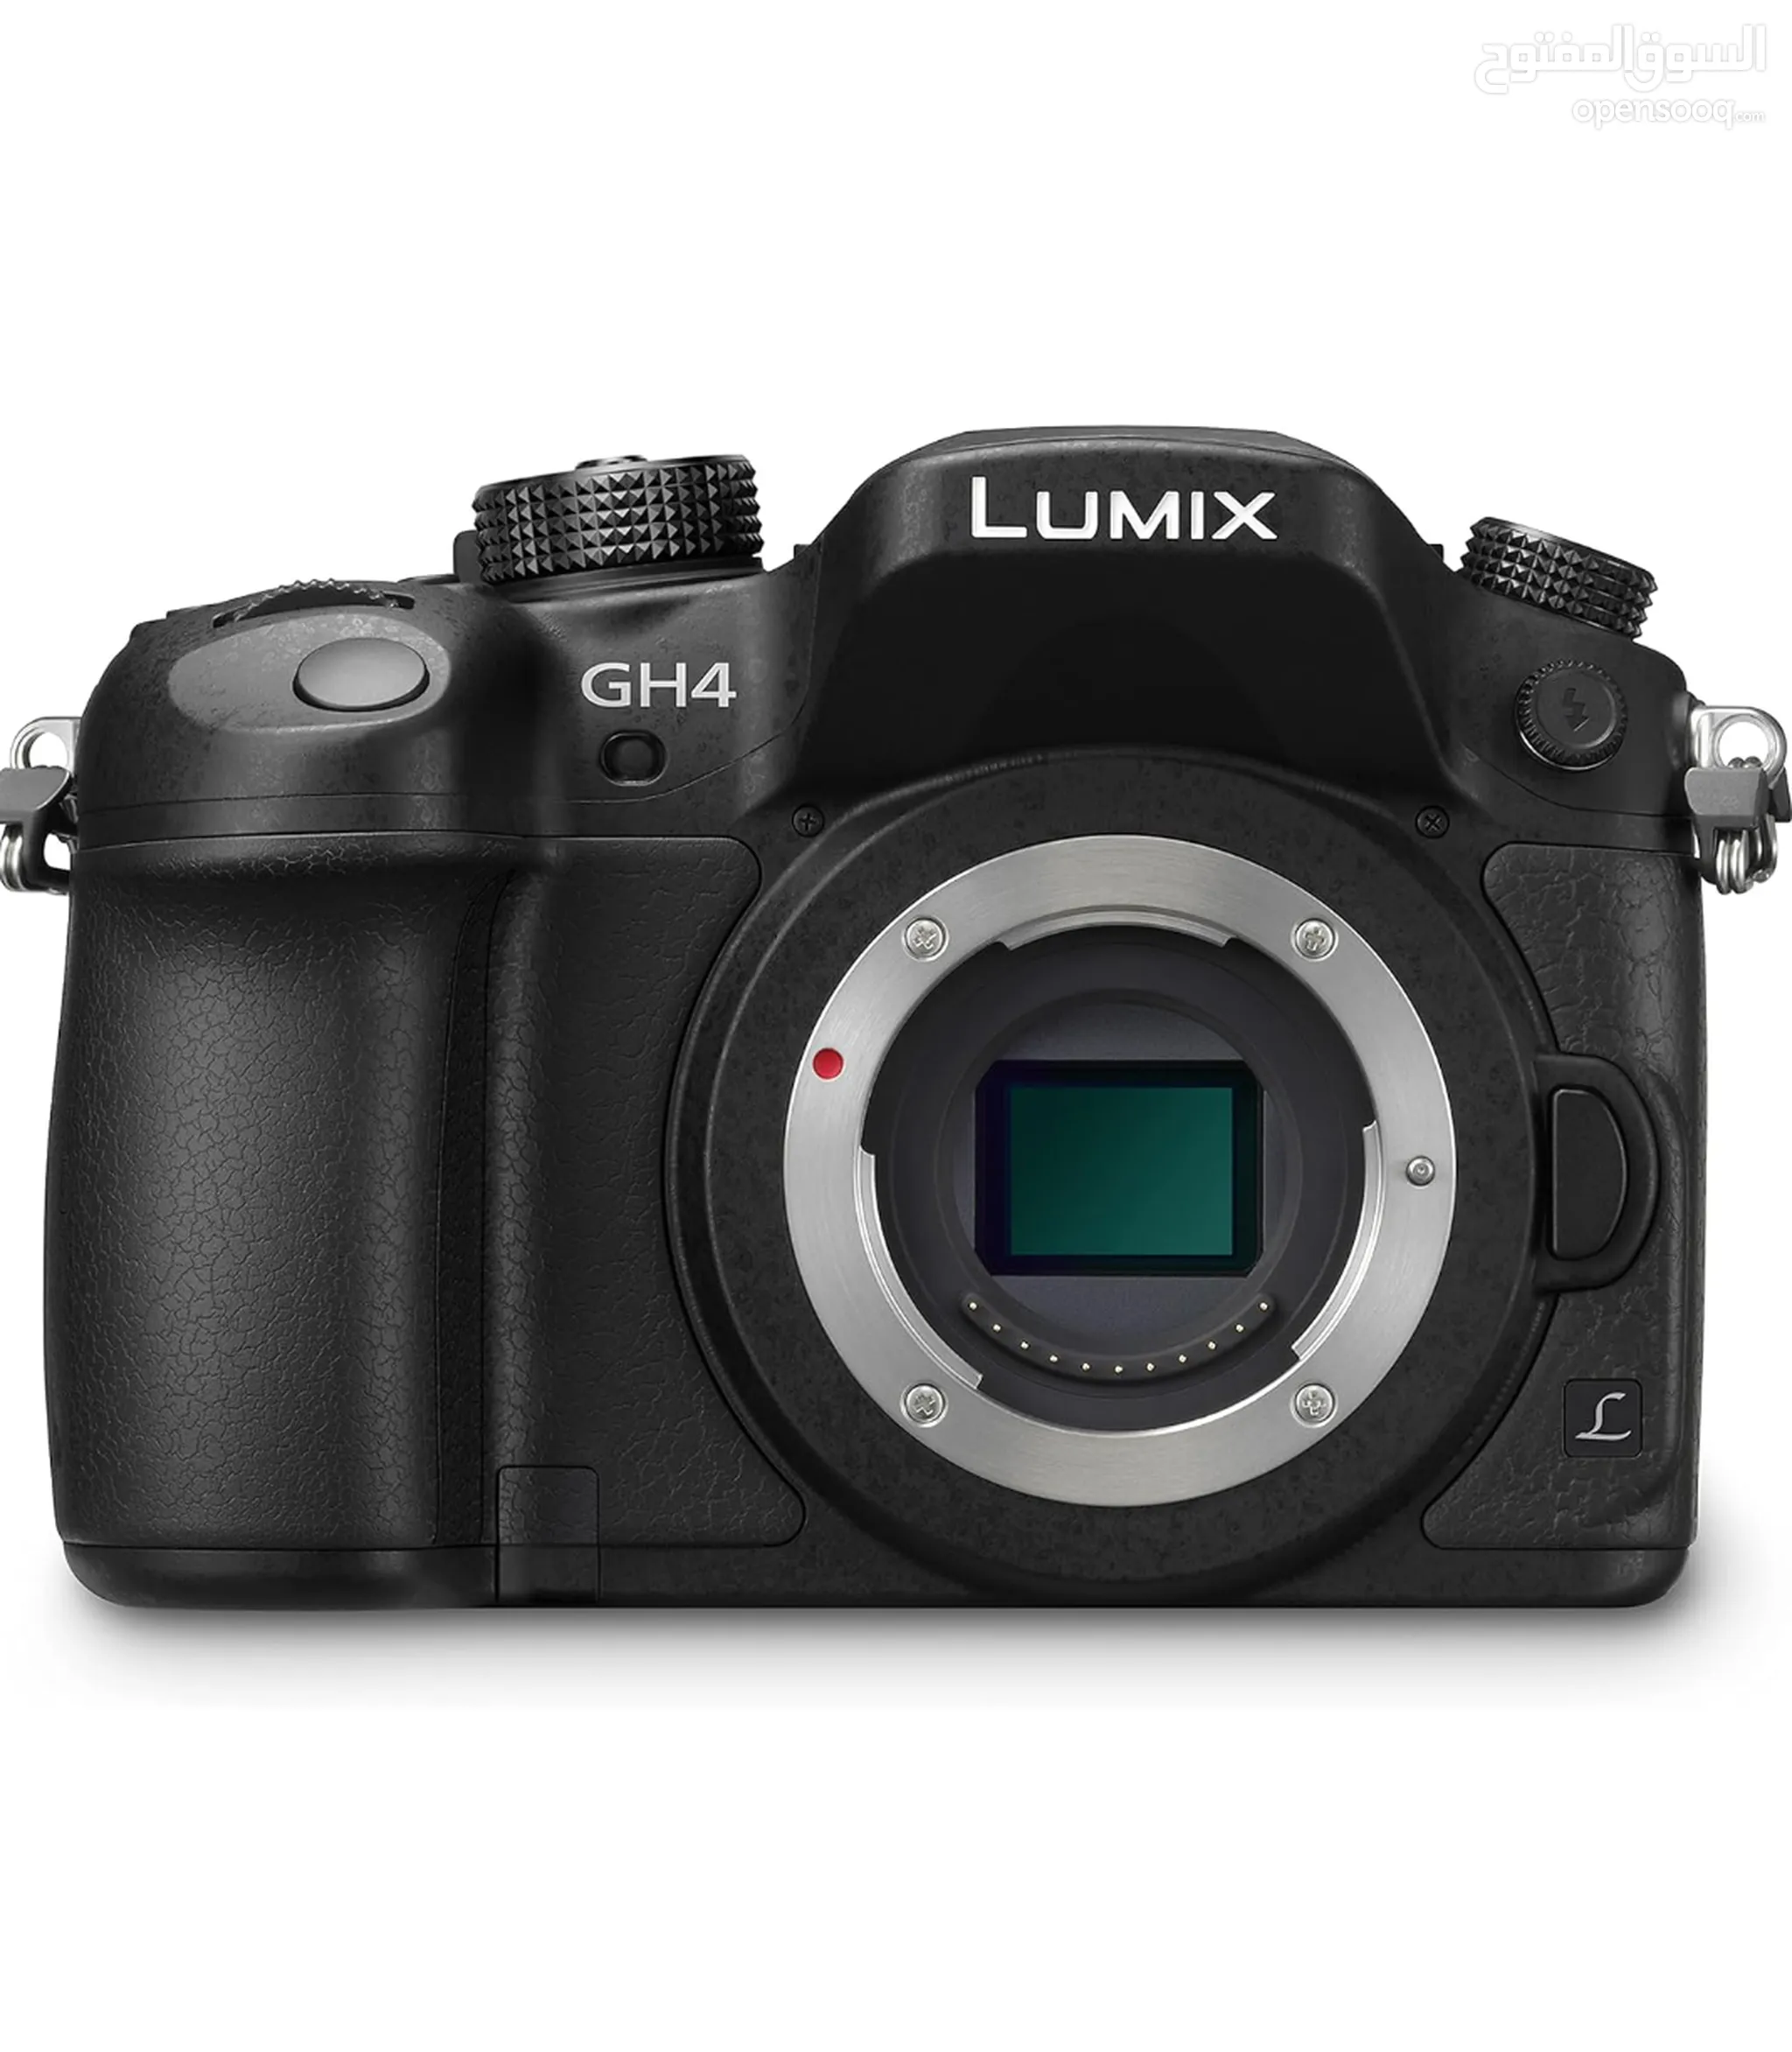 كاميرات باناسونيك للبيع : lumix : 4K : شريط صغير : ديجيتال : فيديو وصور :  الأردن | السوق المفتوح